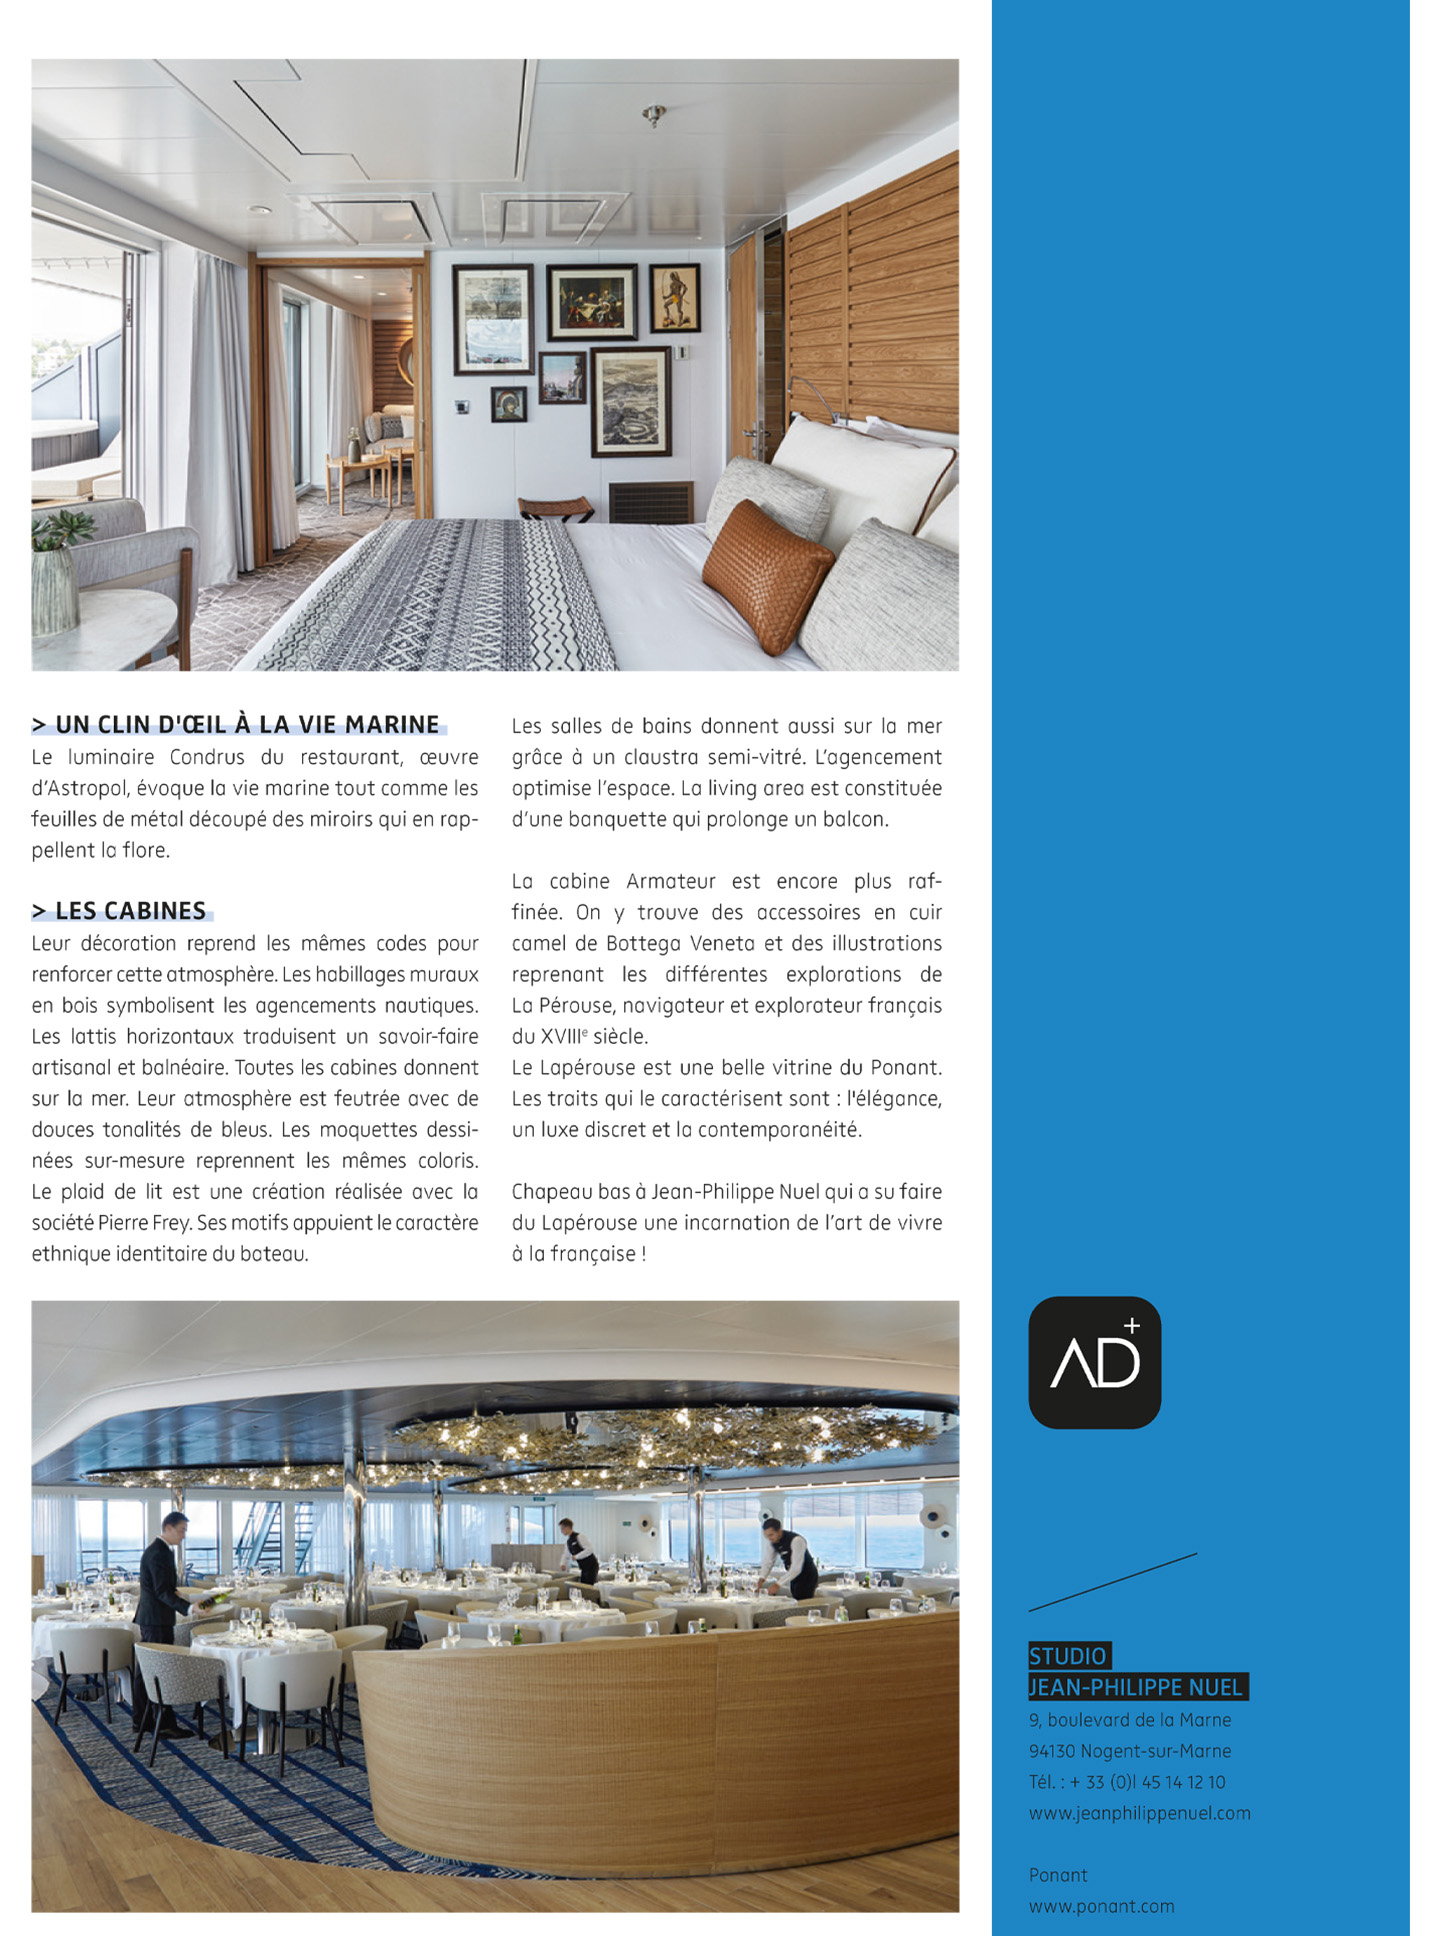 Article sur Le Champlain ponant Explorers réalisé par le studio jean-Philippe Nuel dans le magazine NDA, bateau de croisière de luxe, exploration maritime